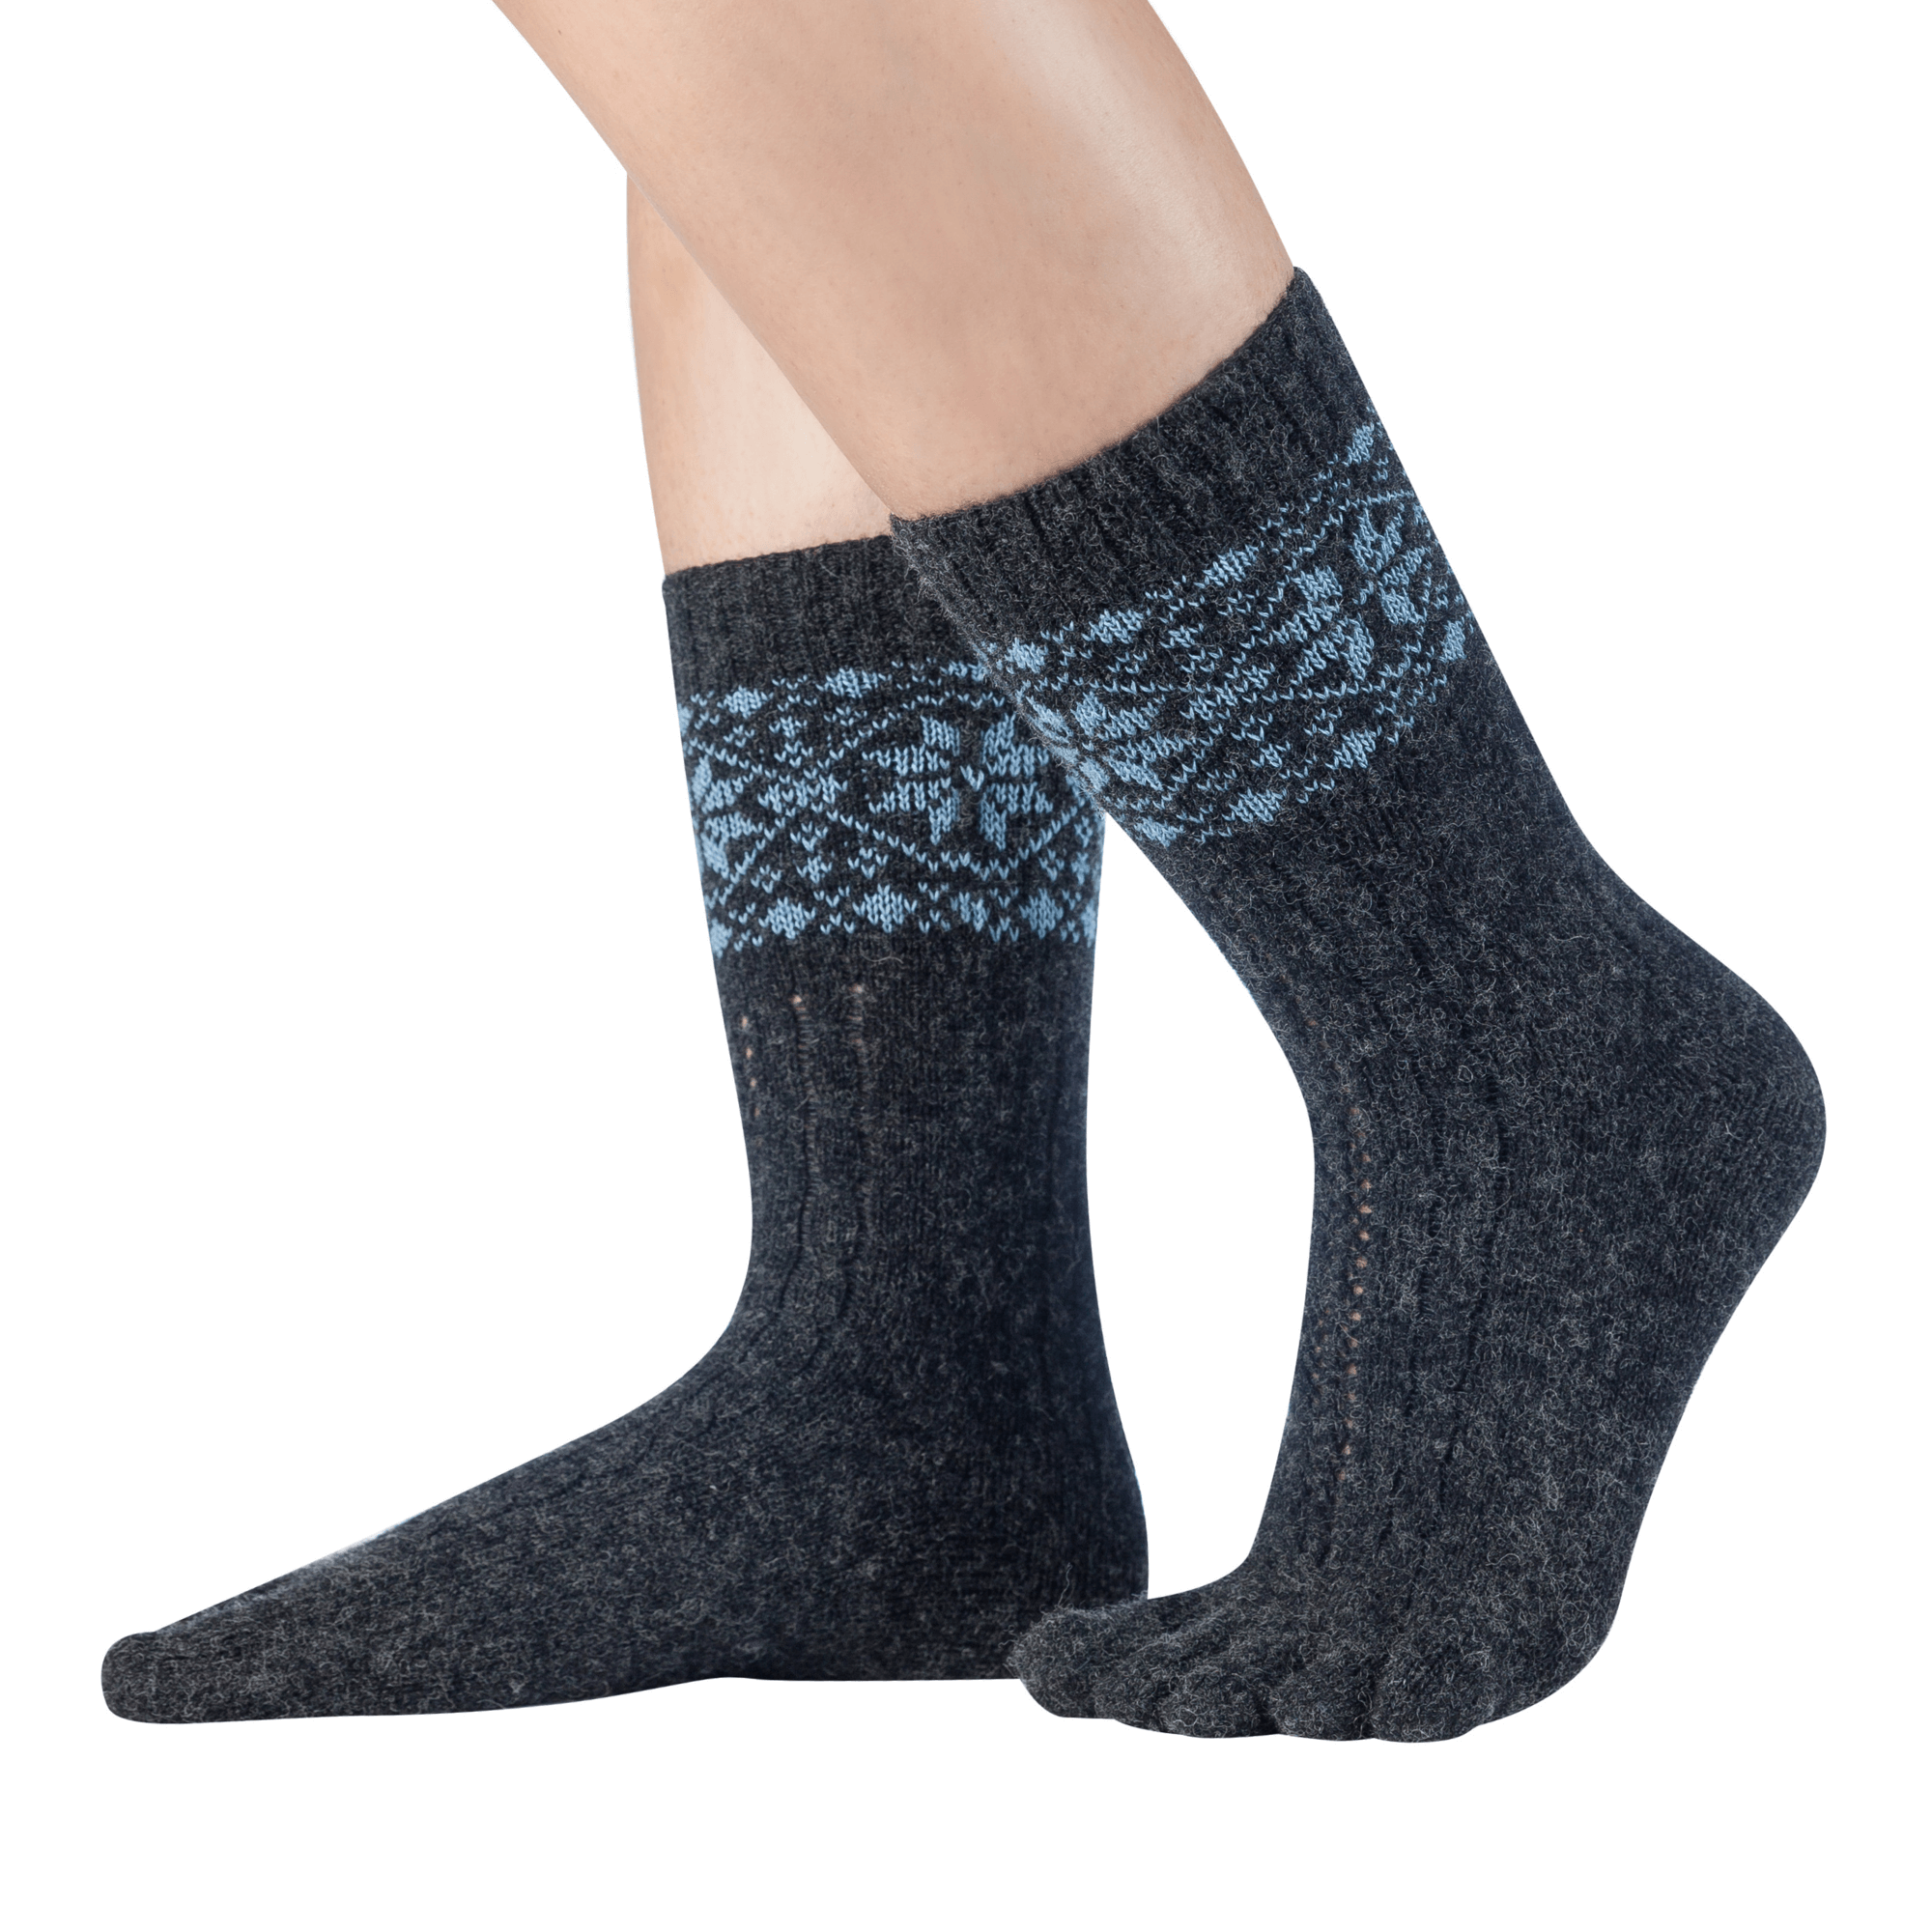  Knitido cálidos calcetines de merino y cachemira con estampado de parches de nieve en antracita/azul